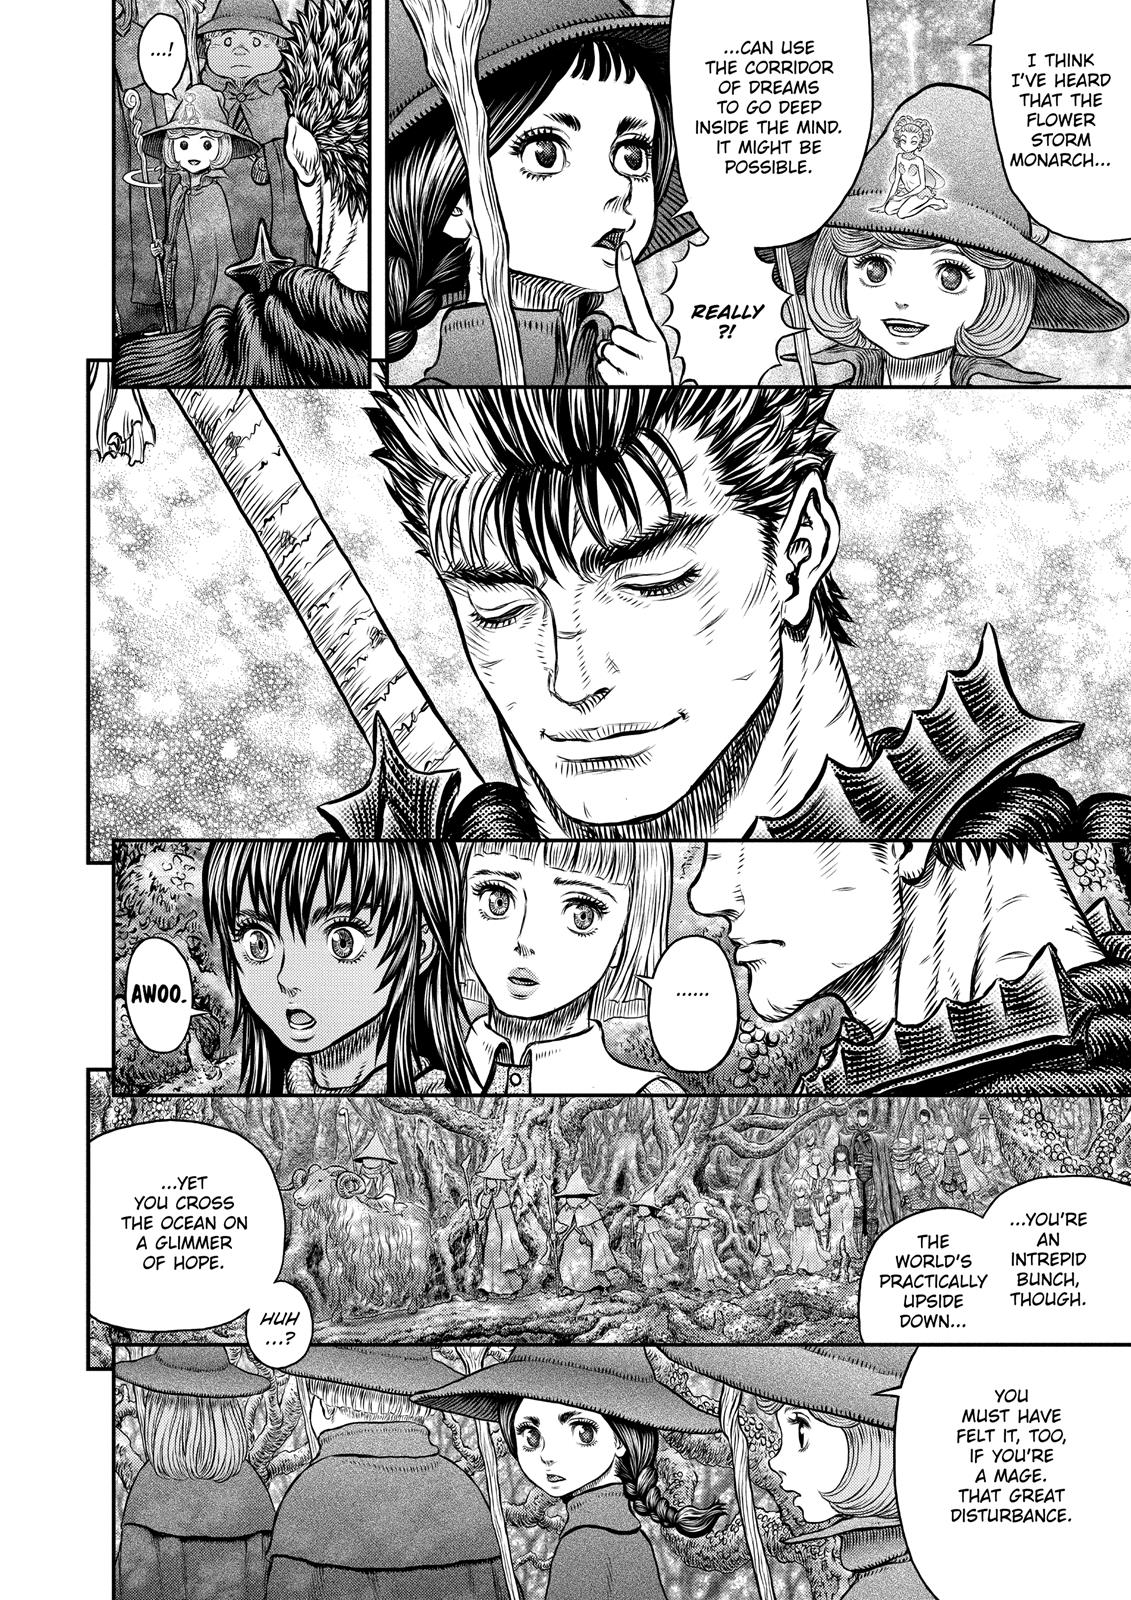 Berserk Manga Chapter 344 image 13